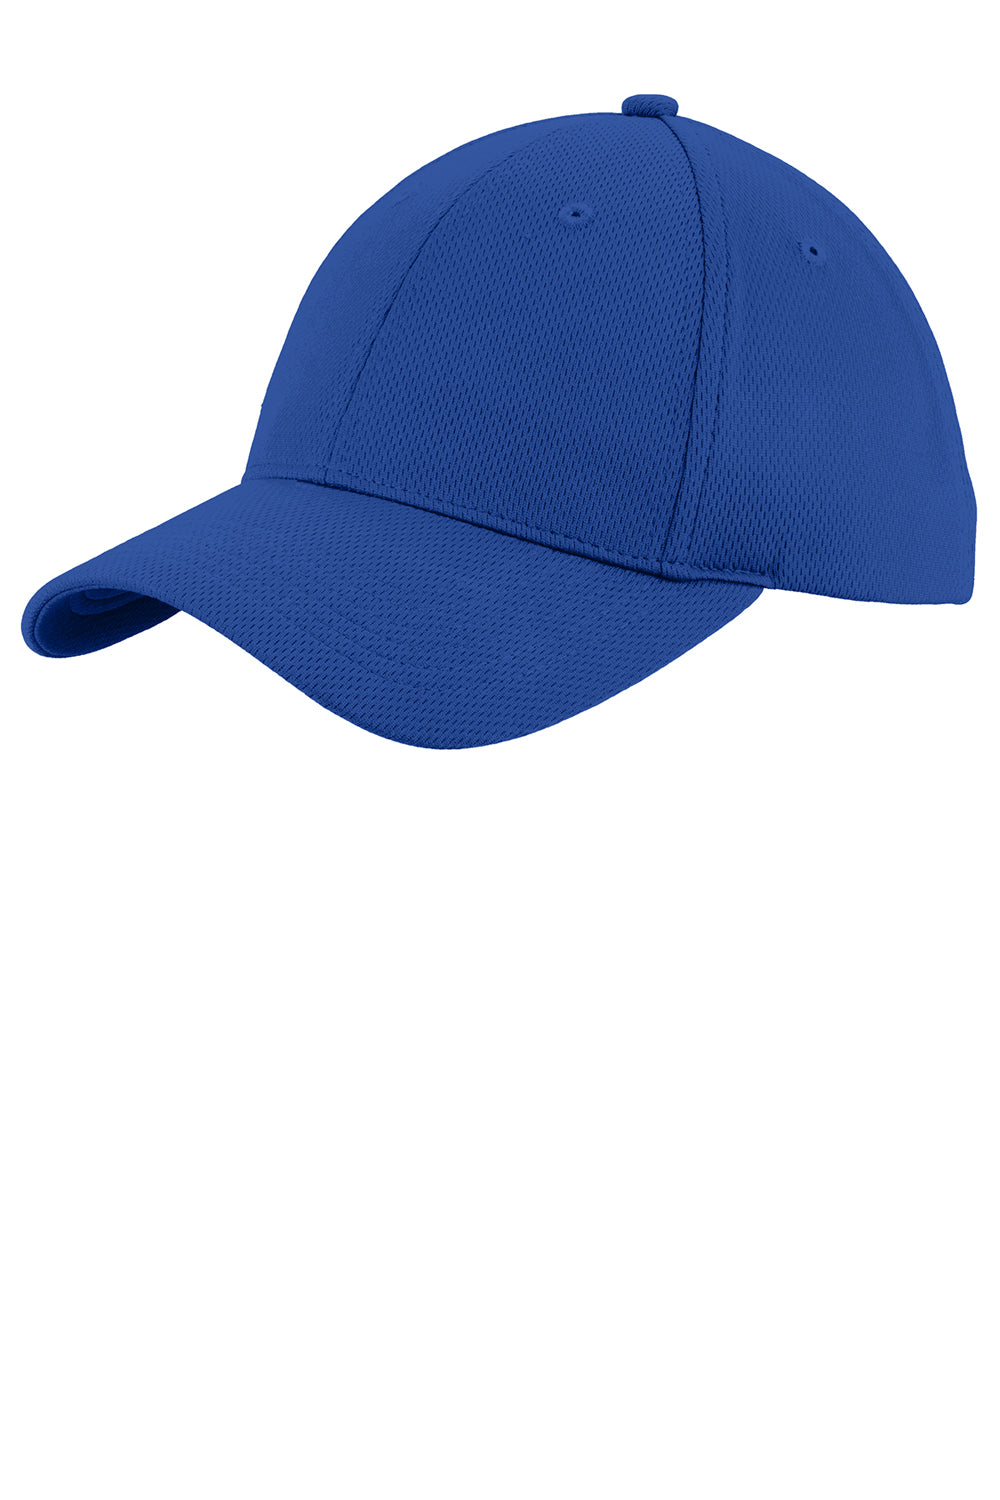 Sport-Tek STC26 Mens Moisture Wicking Adjustable Hat Royal Blue Front